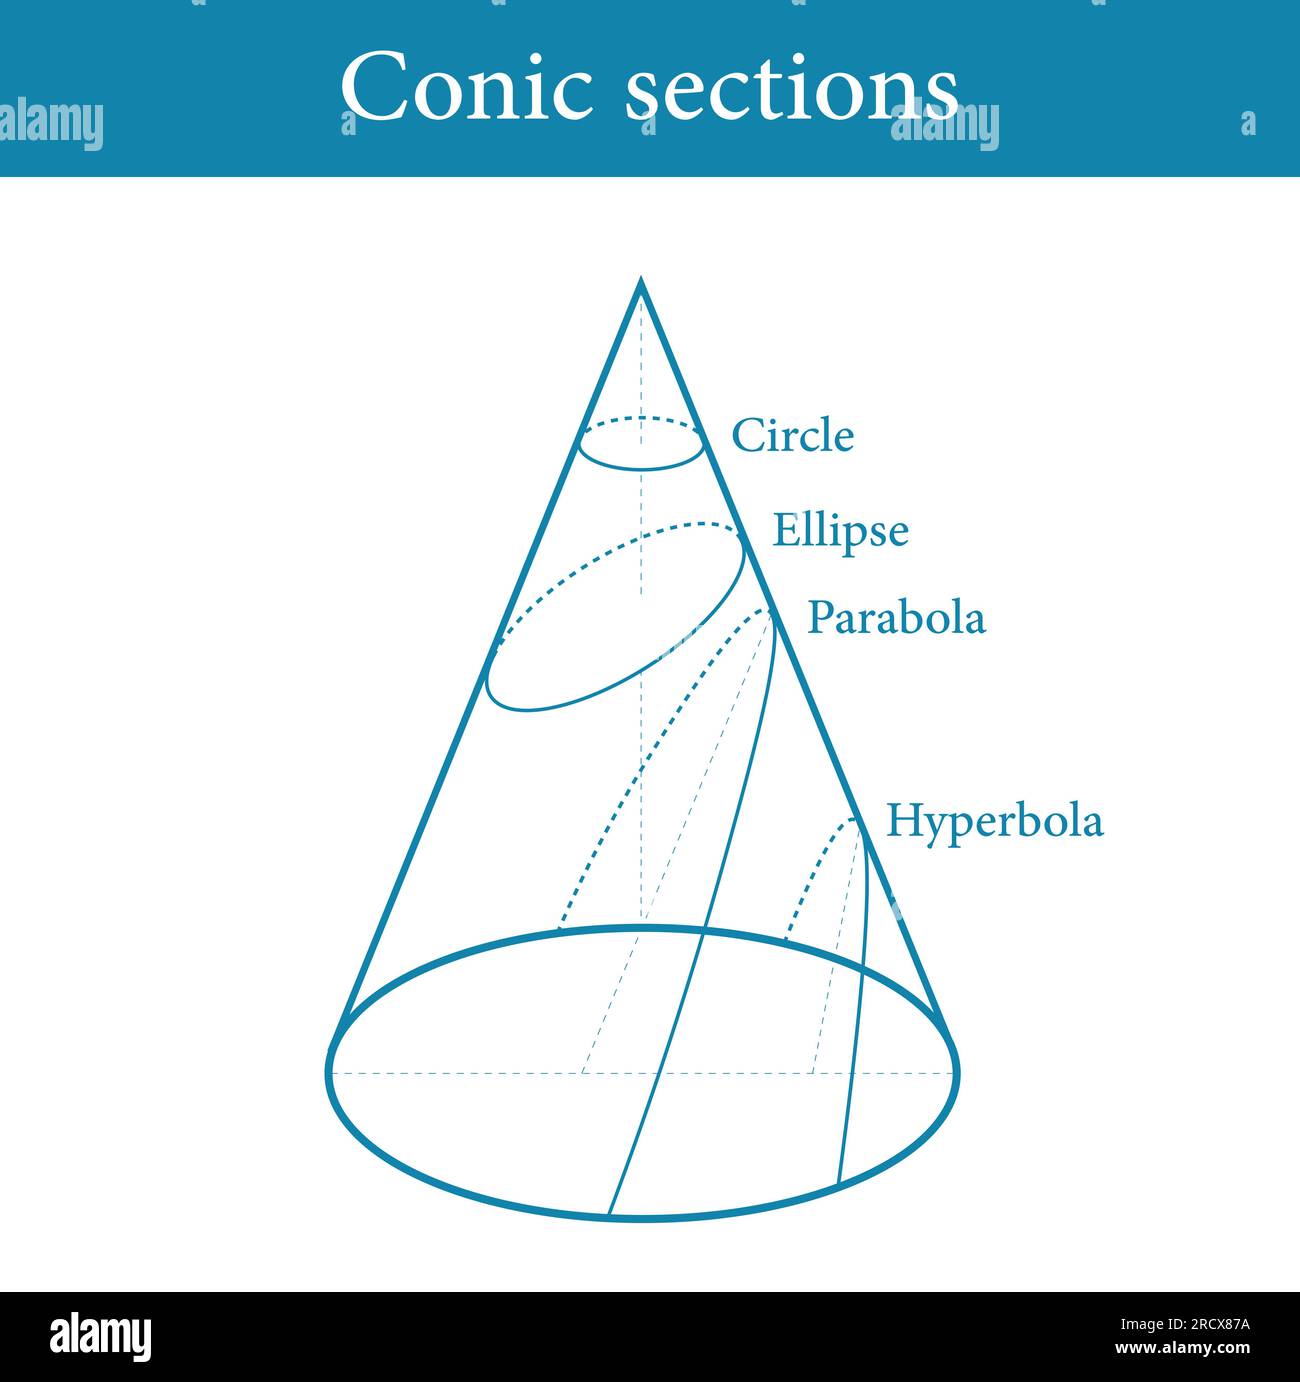 Types de sections coniques. Cercle, Ellipse, parabole et hyperbole. Illustration vectorielle isolée sur fond blanc. Illustration de Vecteur